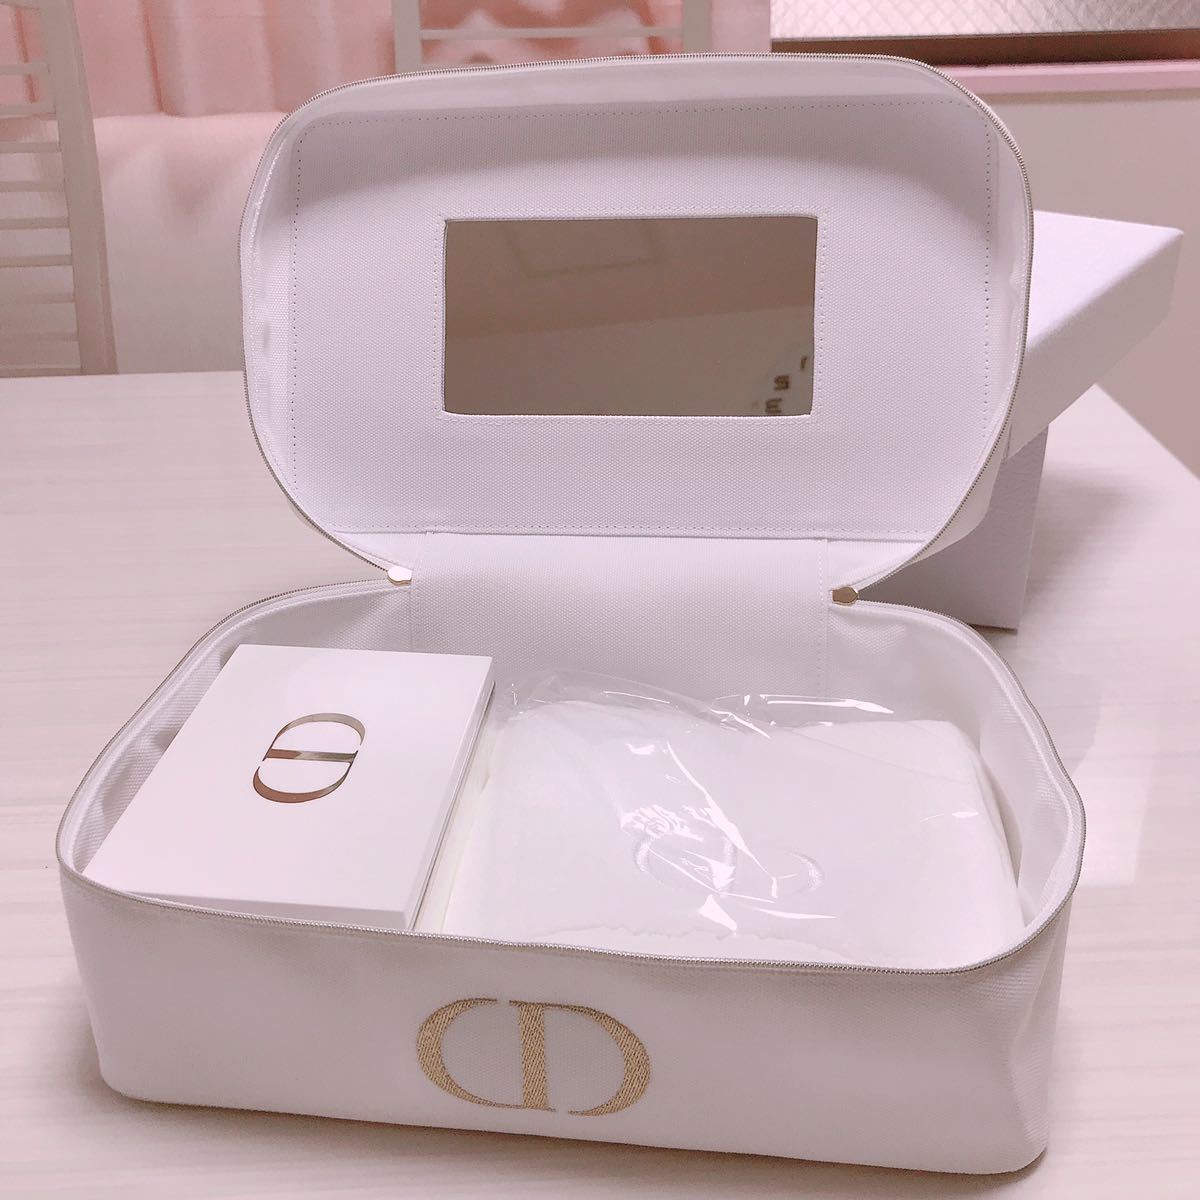 【Dior】ディオール スペシャル ノベルティ バニティ ポーチ ケース コットンケース タオル お得意様限定 非売品 レア商品